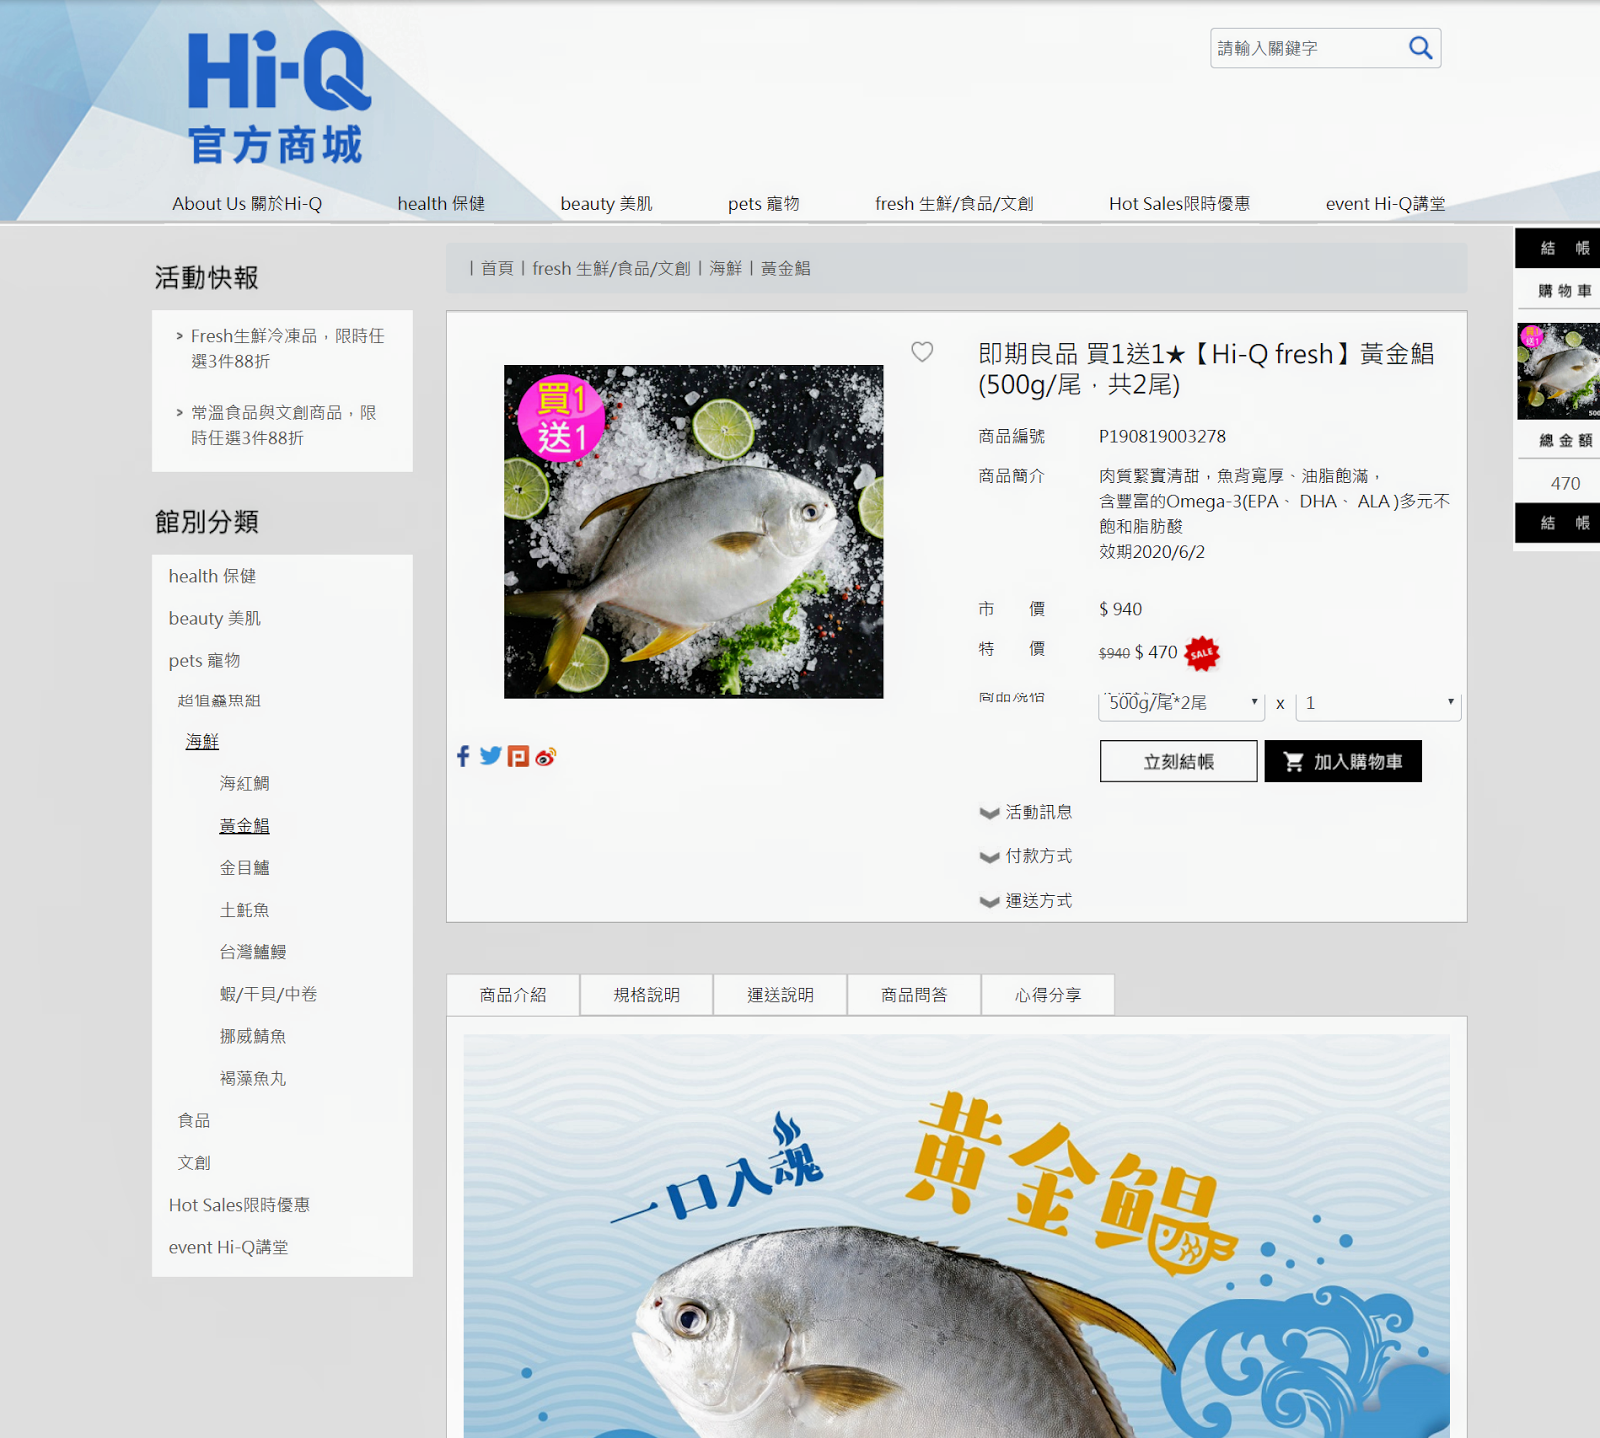 Hi-Q官方商城褐藻醣膠健康魚採用友善環境海水養殖使用歐盟檢驗標準與屏東直送產銷履歷